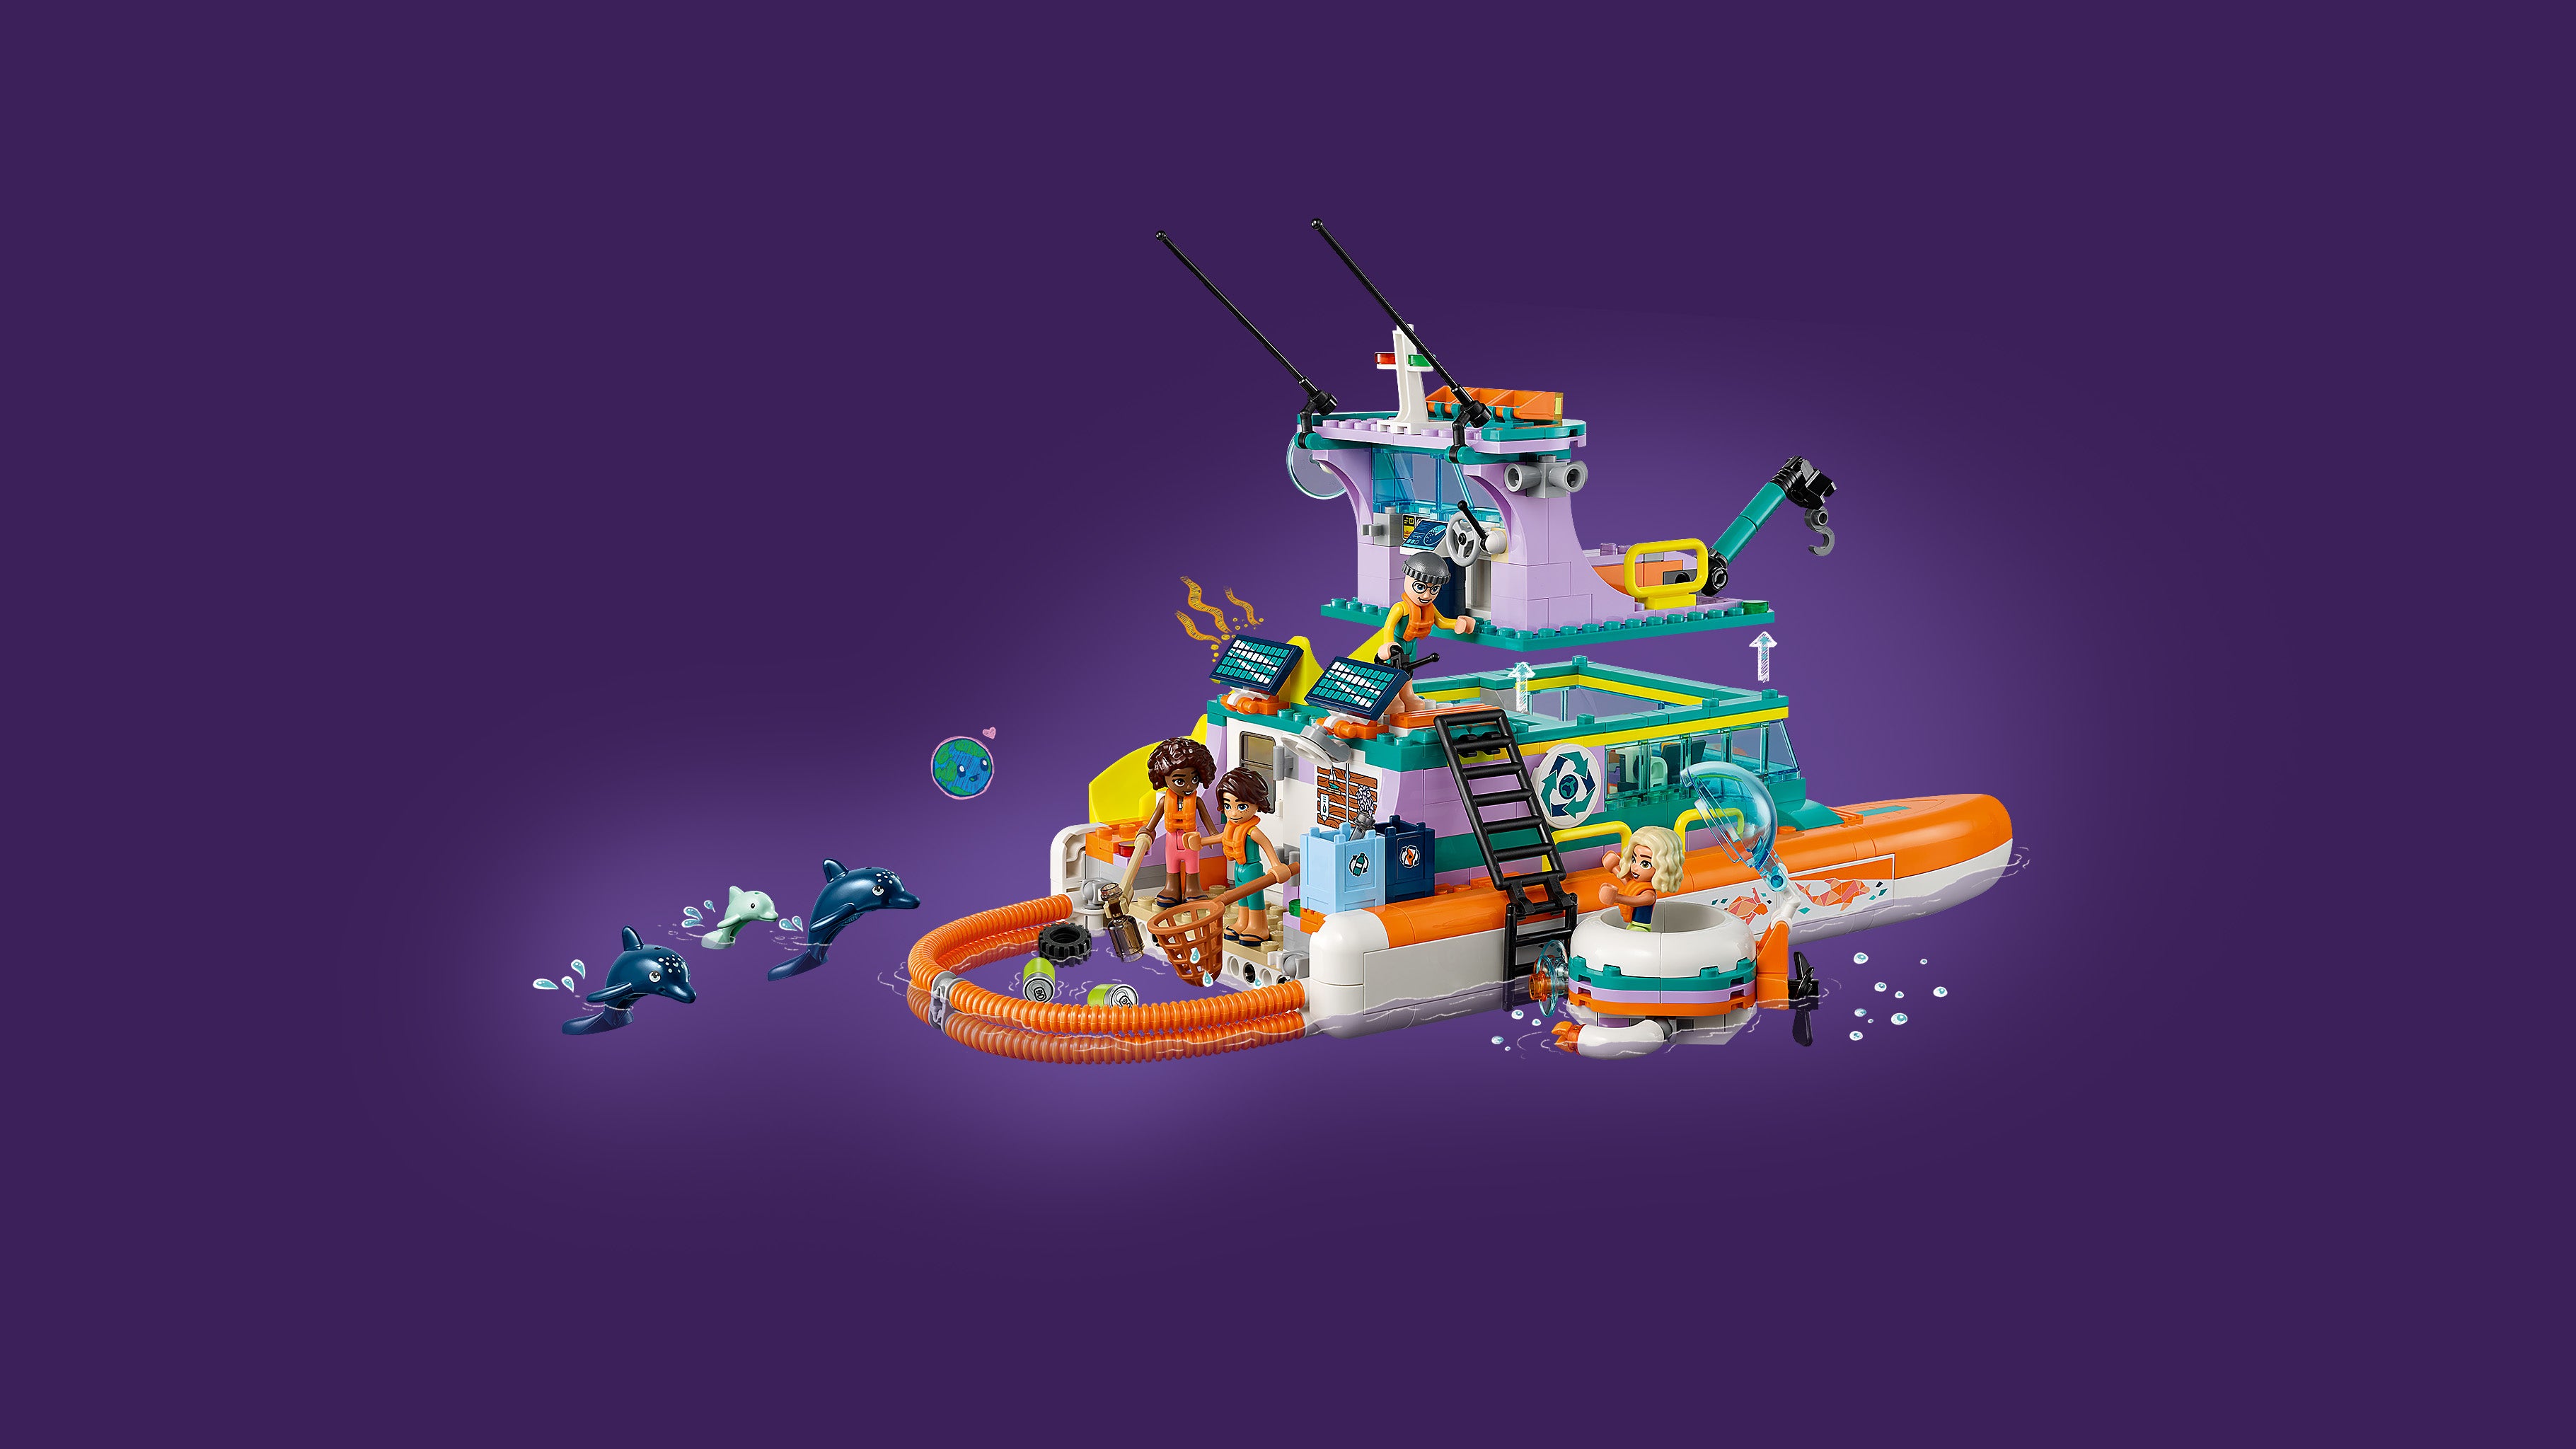 Lego 41734 Sea Rescue Boat